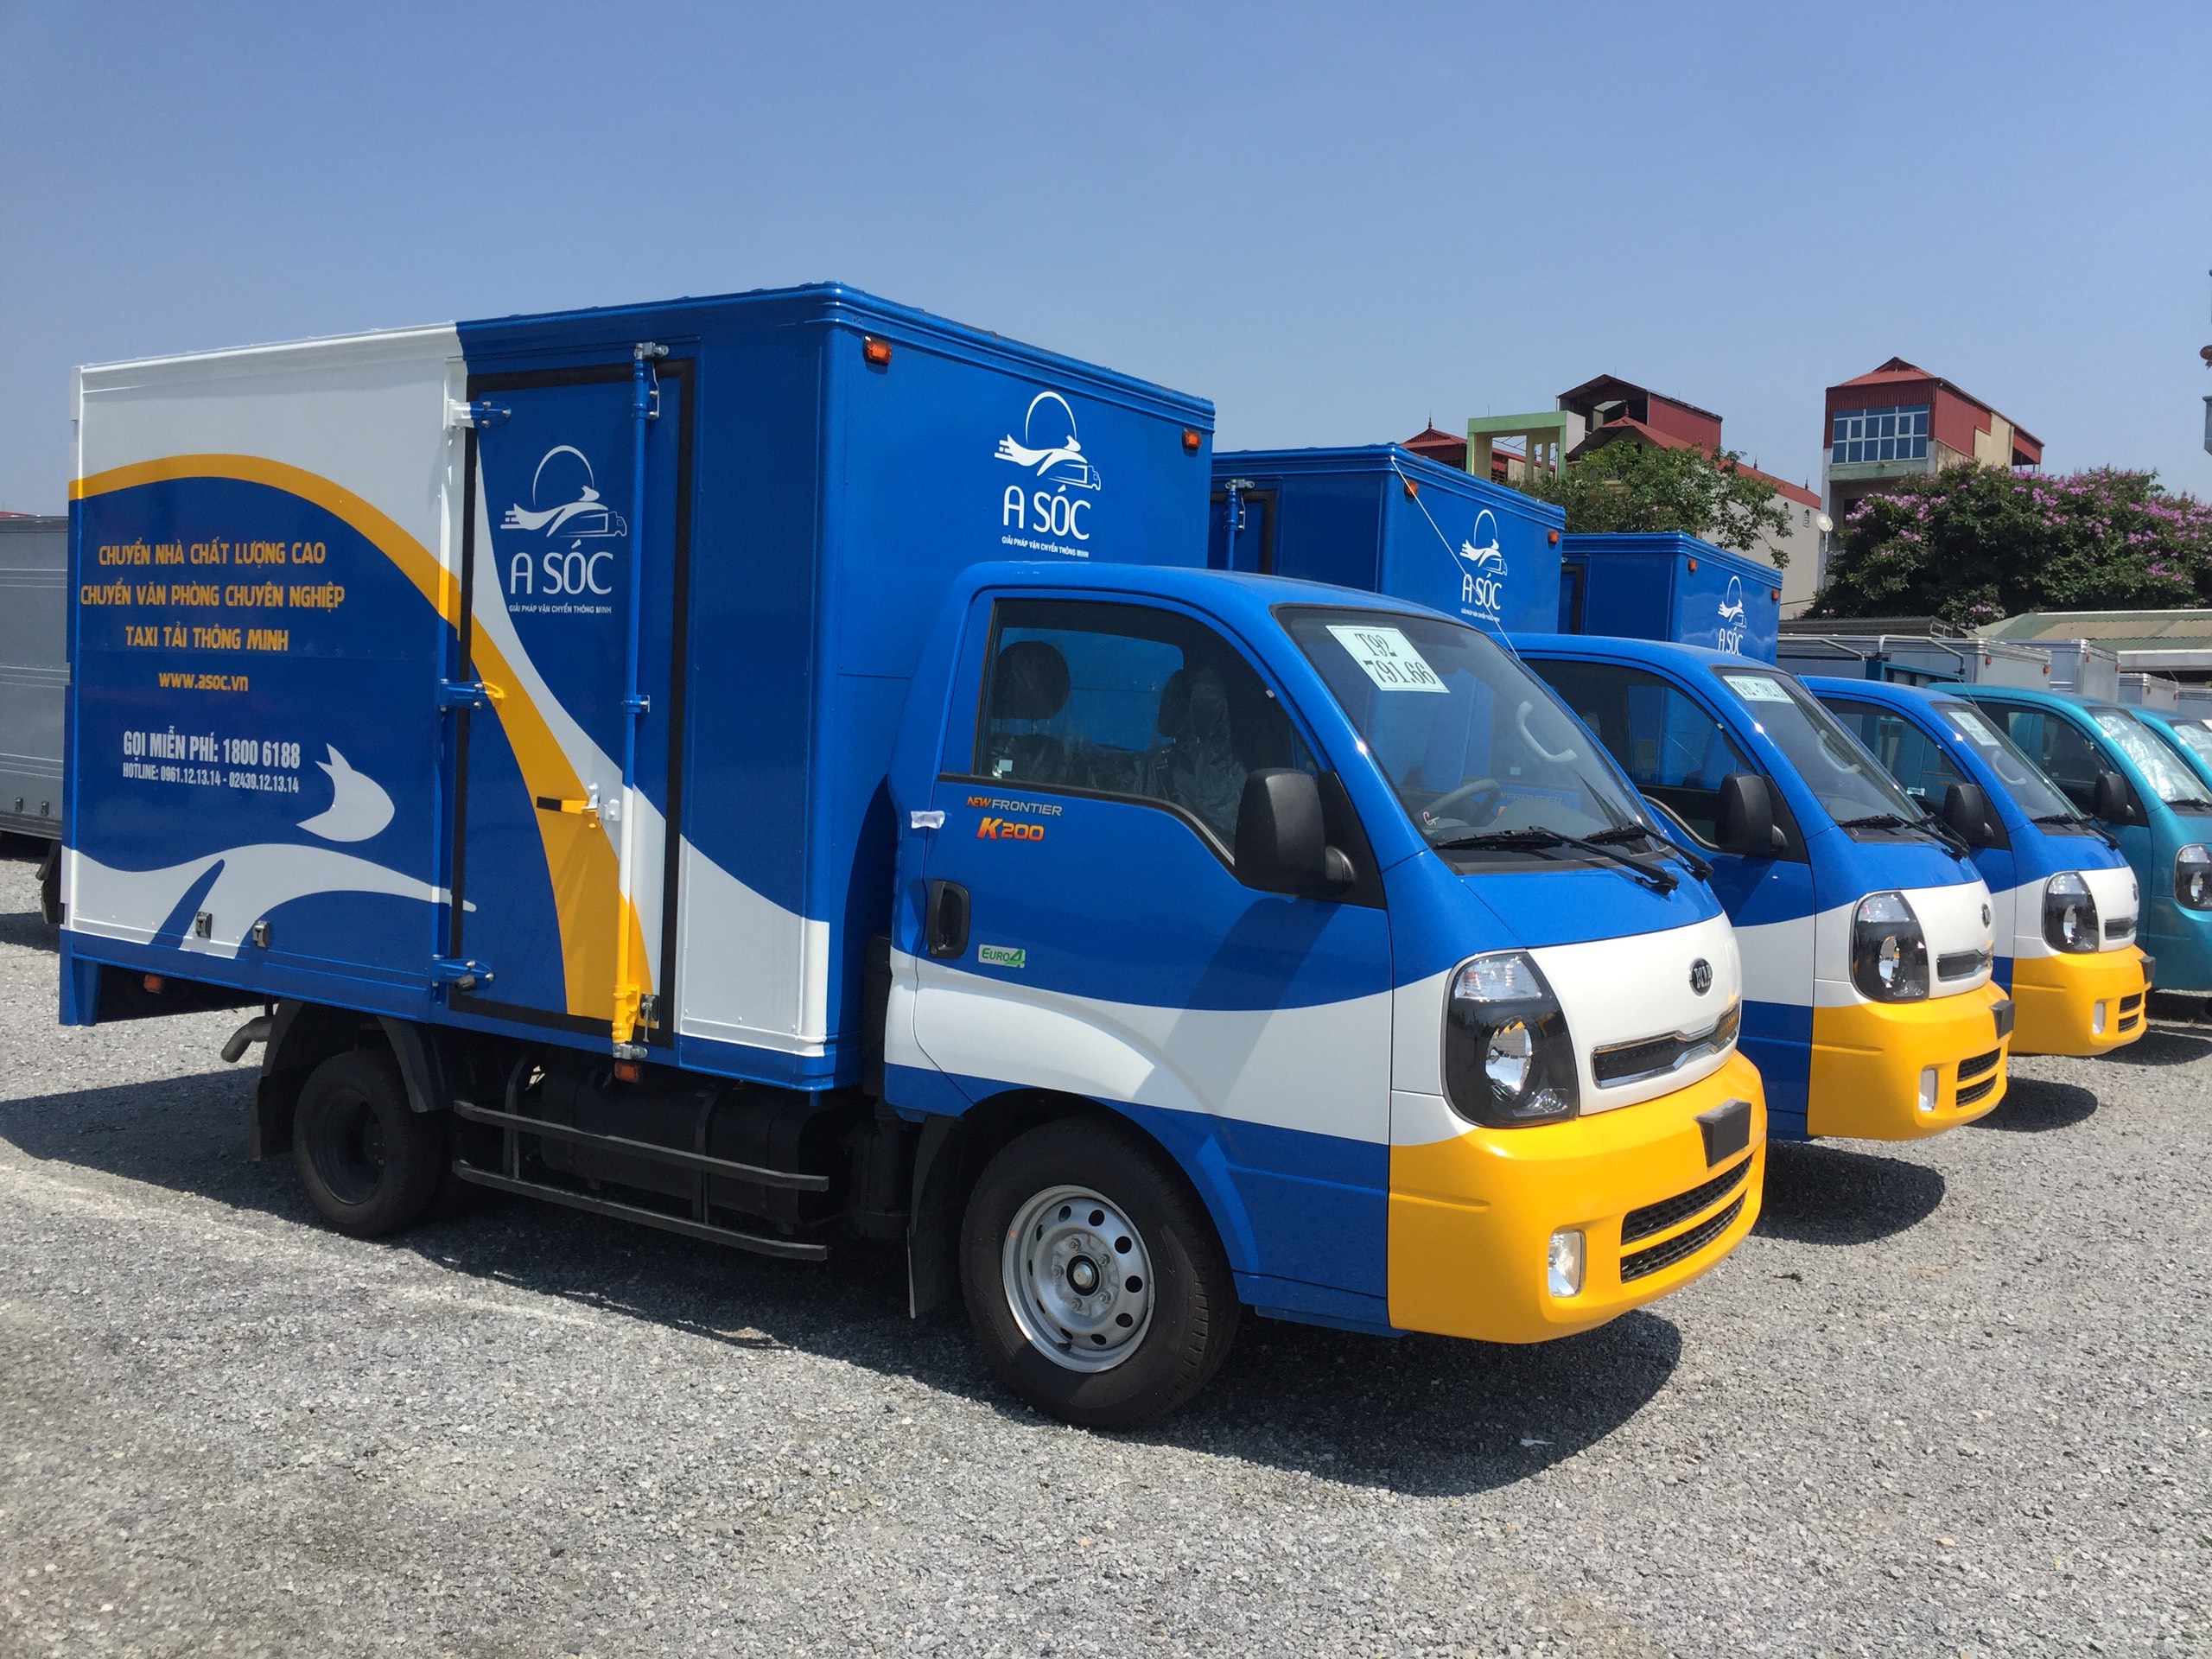 Vận Tải A Sóc - Dịch vụ thuê xe tải chở hàng giá rẻ tại Hà Nội